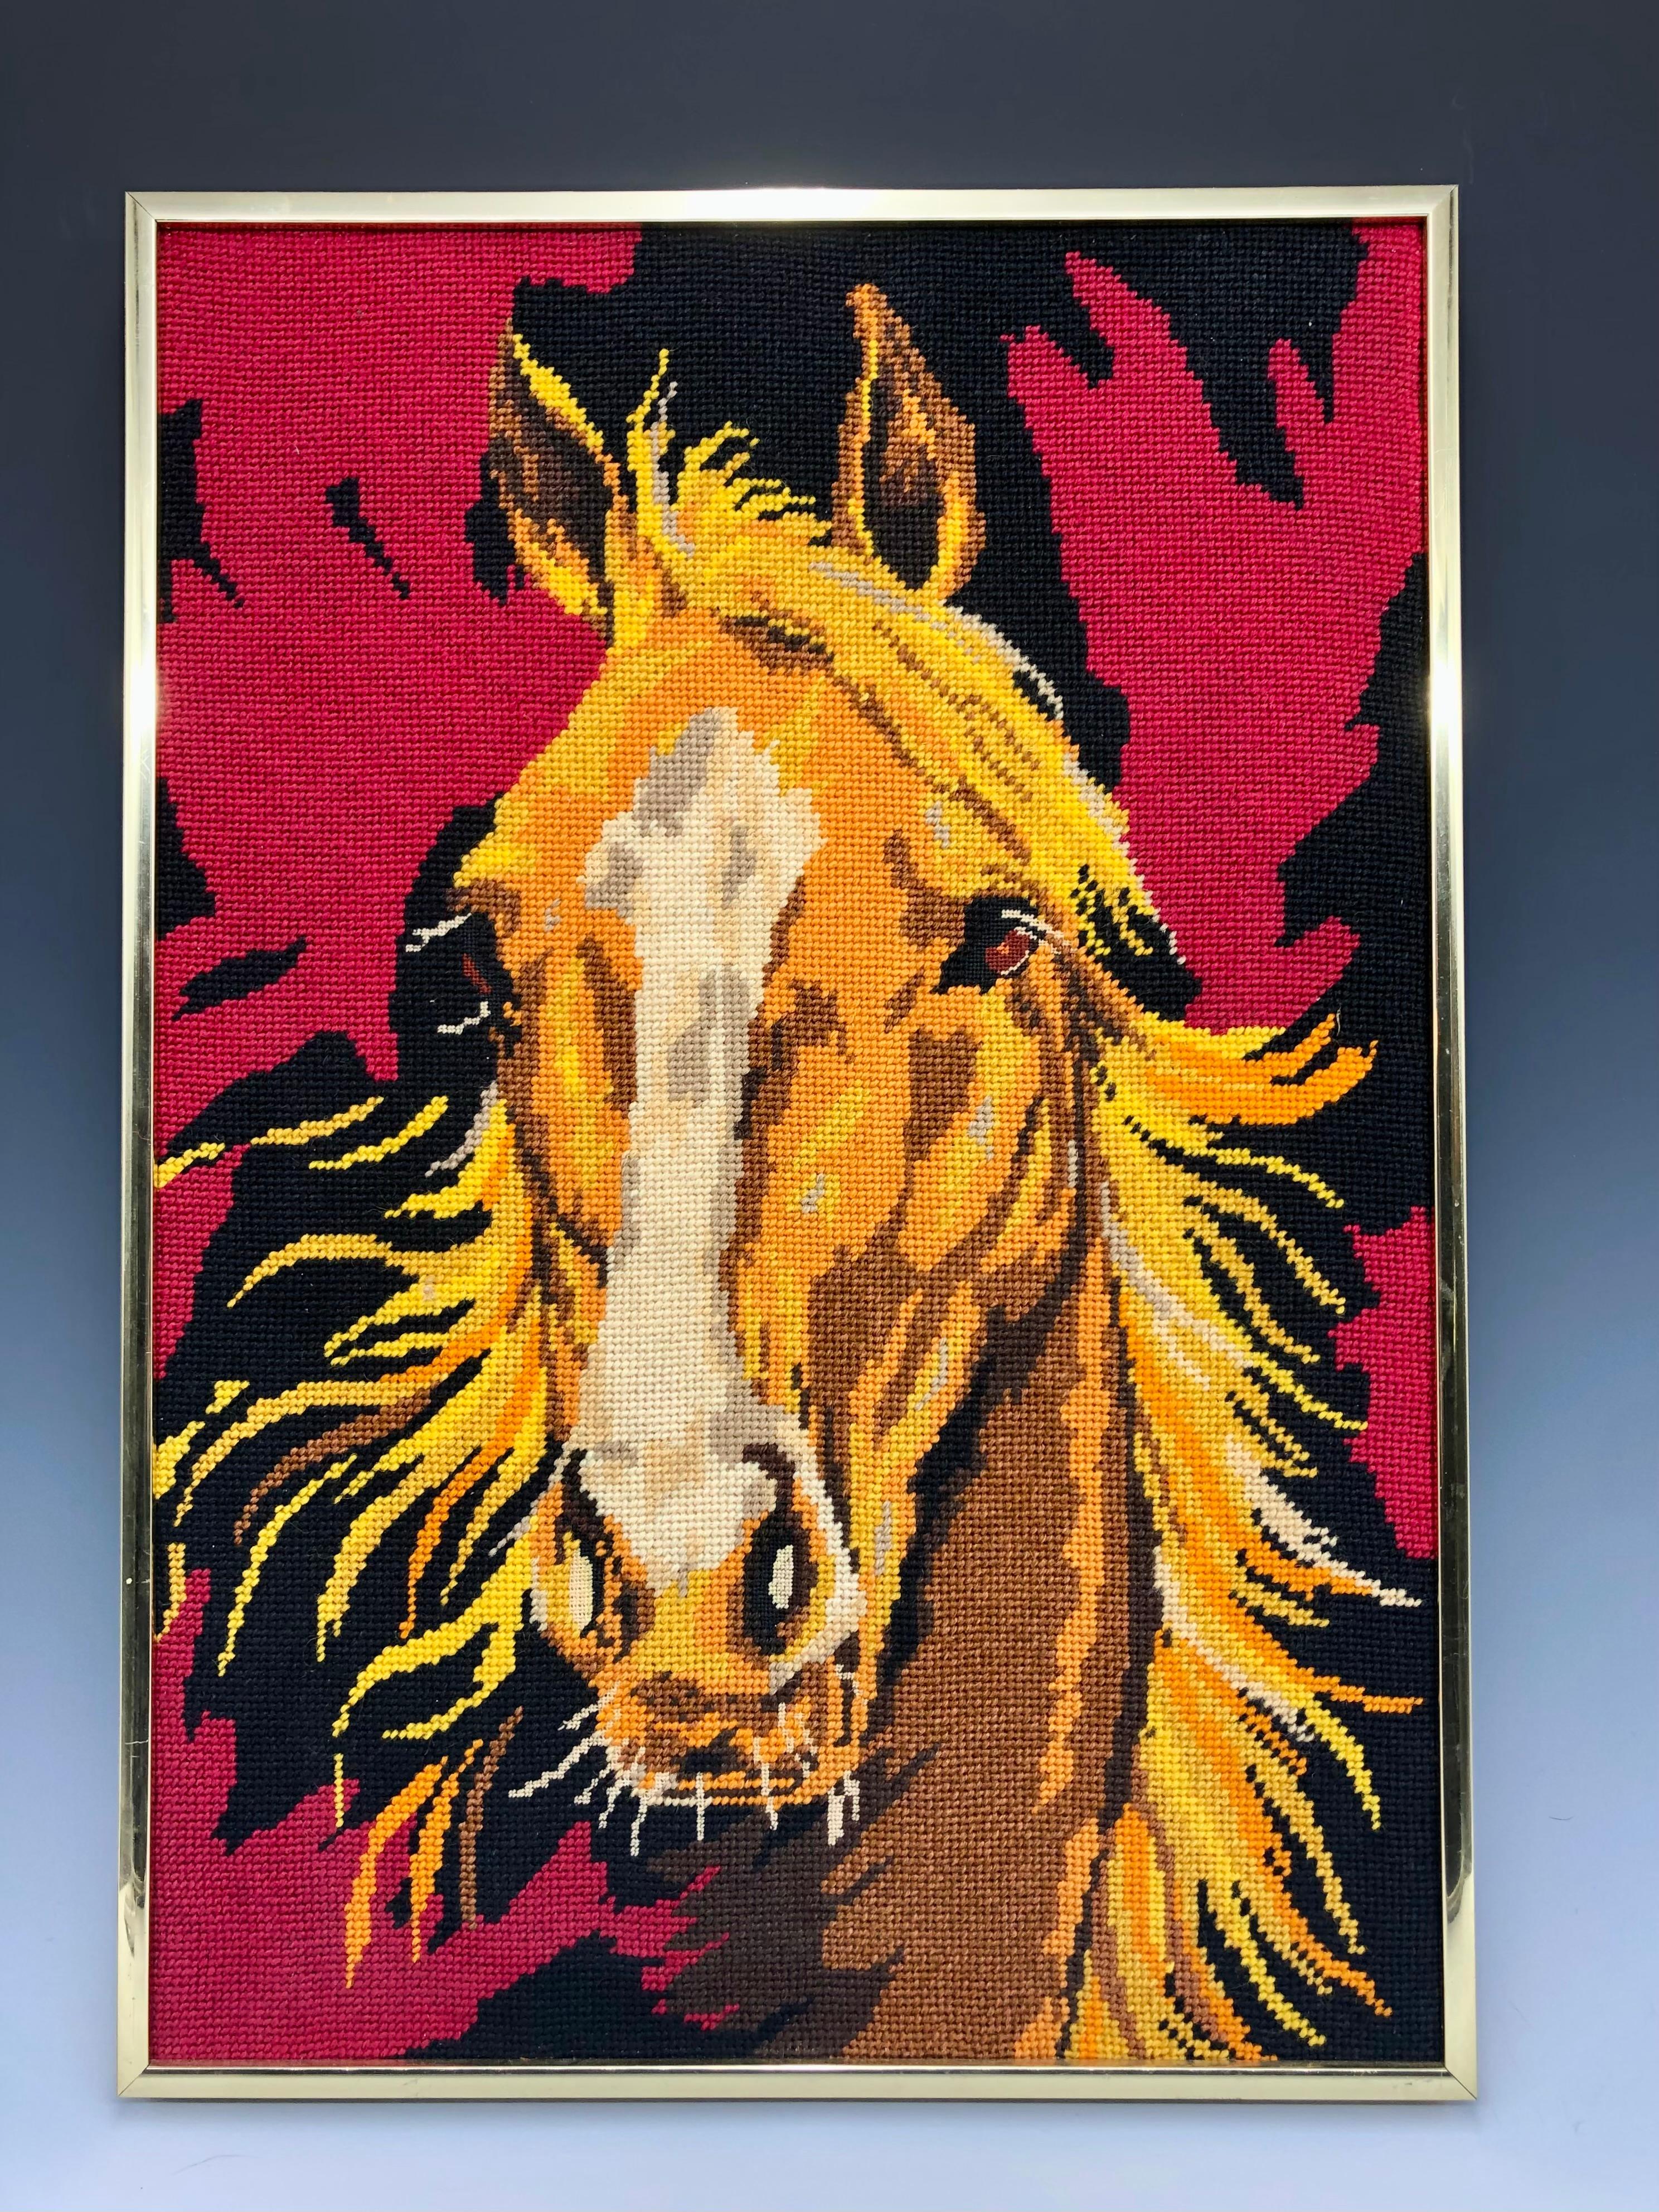 Dieses auffällige, handgestickte Pferdeporträt aus den 1970er Jahren hat einen abstrakten Hintergrund mit roten und schwarzen Flammen. 

Der Artikel wird gerahmt angeboten. Die Farben des Wollgarns sind lebhaft und leuchtend.

Die Stickerei ist in